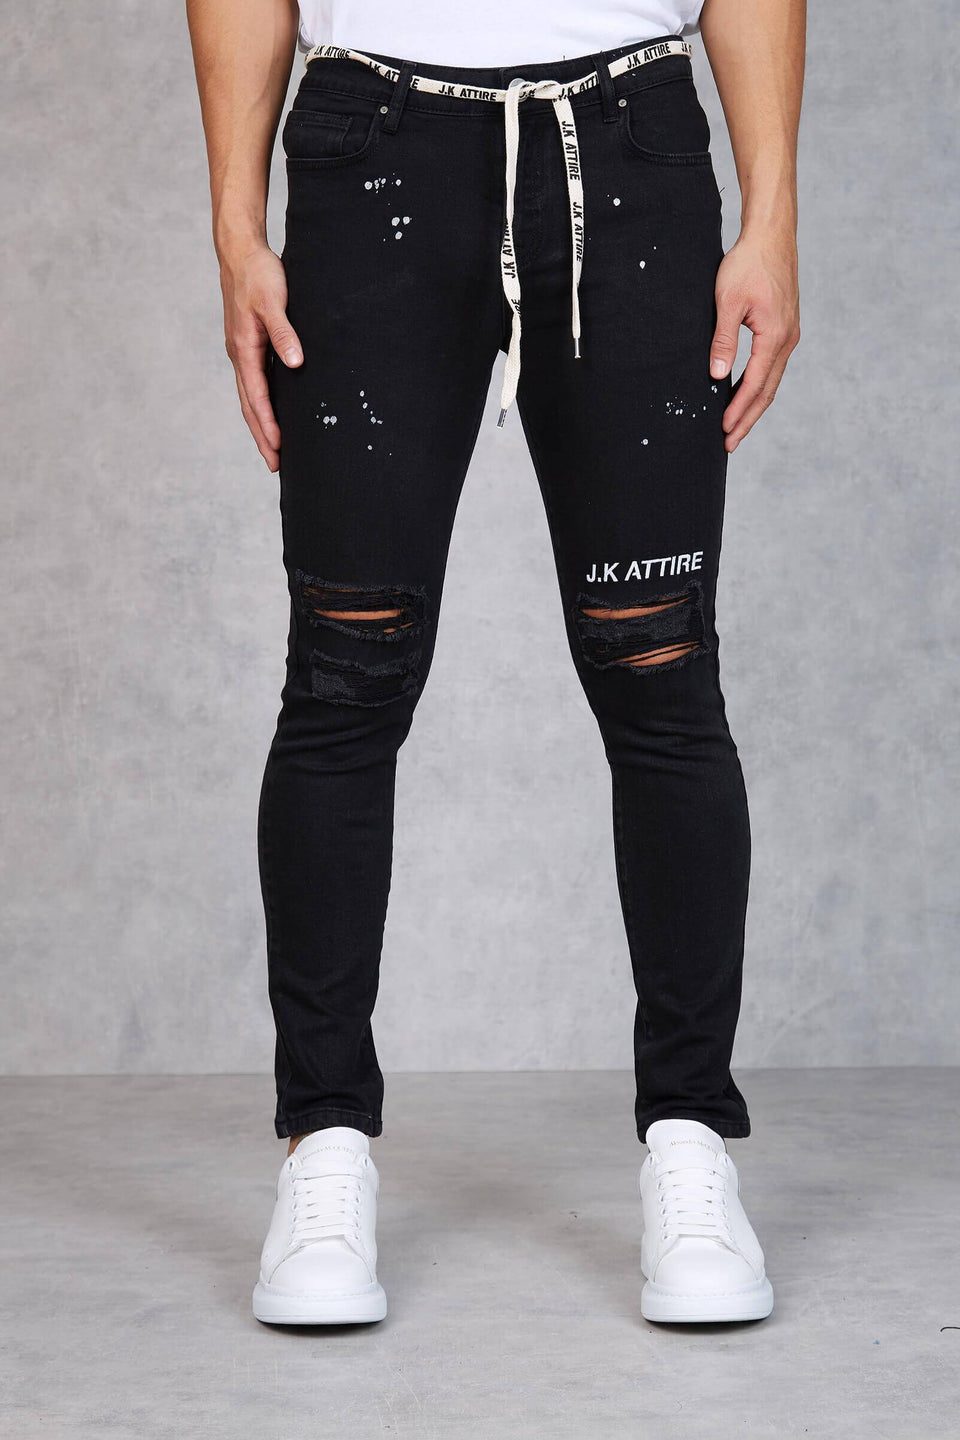 F2 - Monroe Distressed JK Attire Skinny Jeans - Black